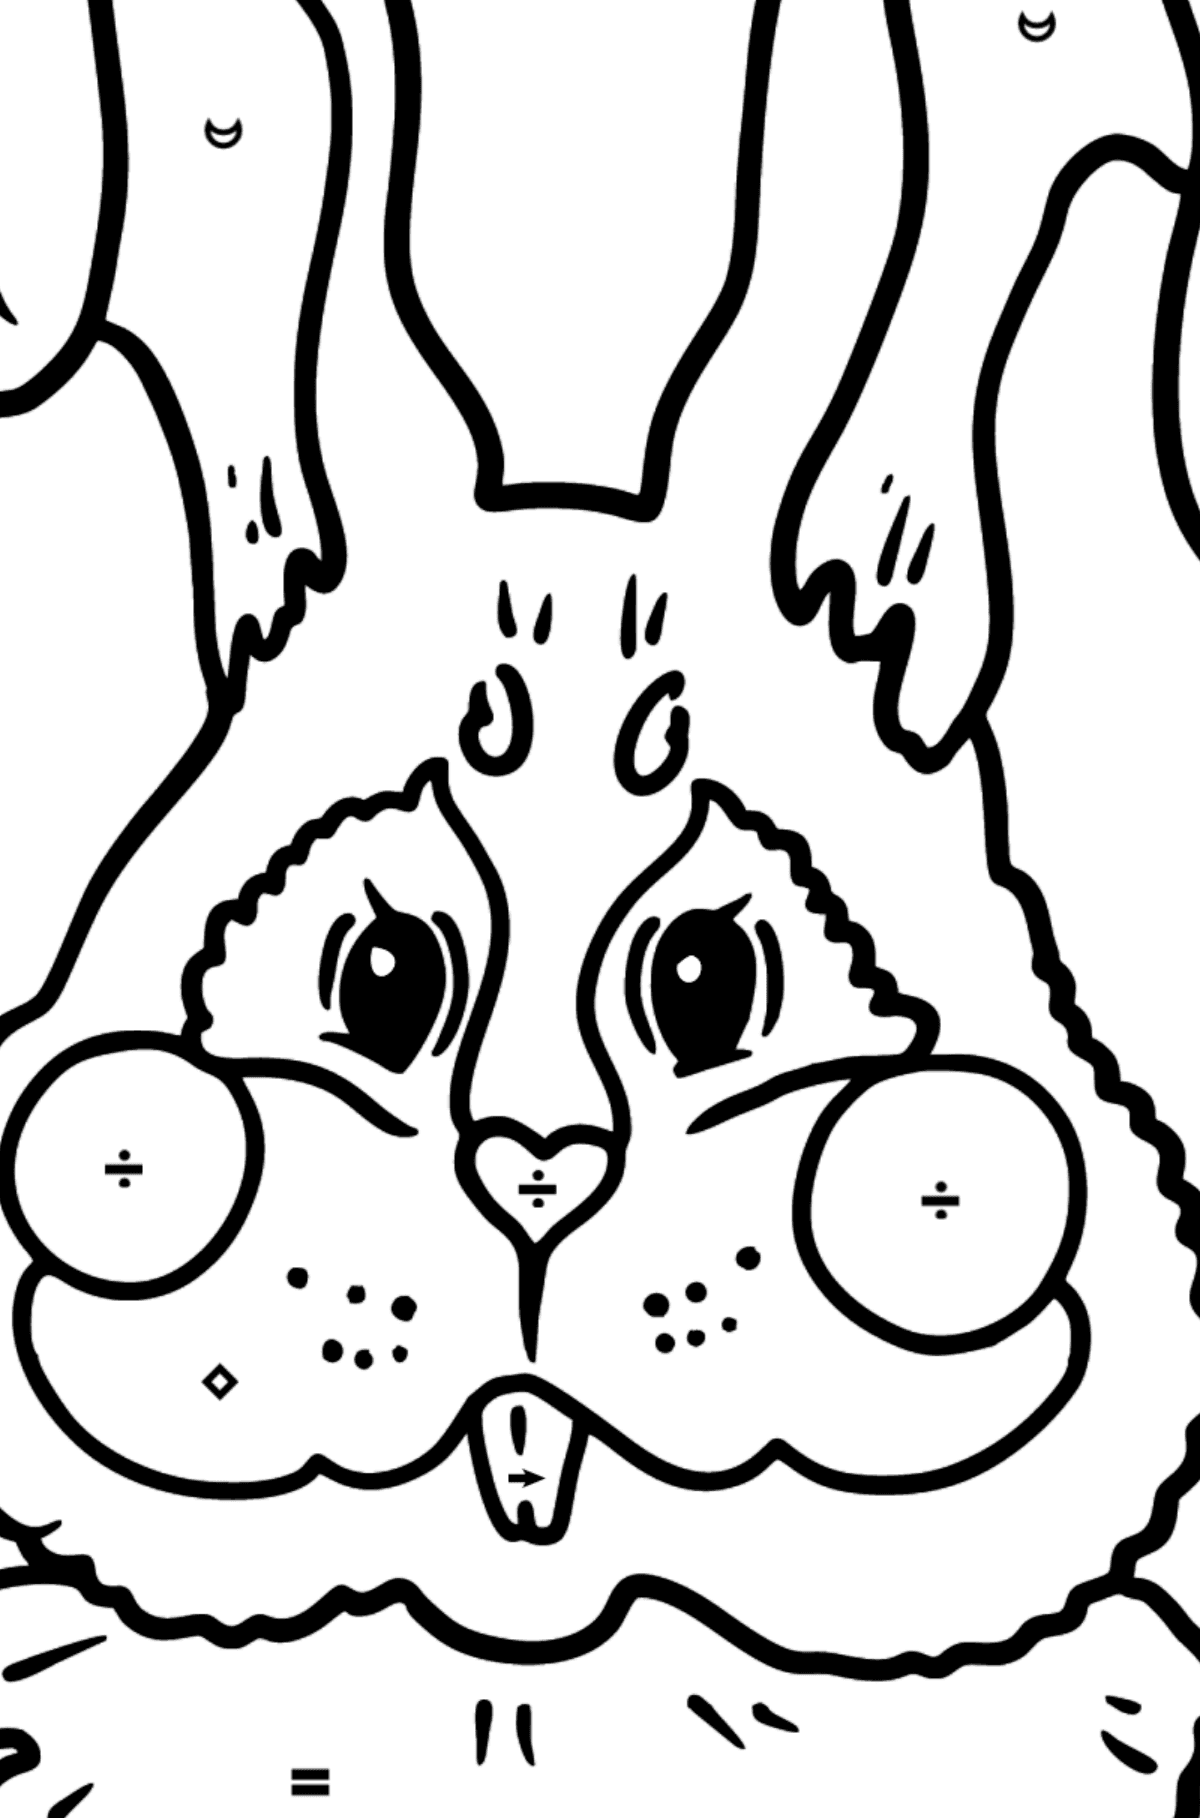 Tegning til fargelegging kanin snute - Fargelegge etter symboler for barn